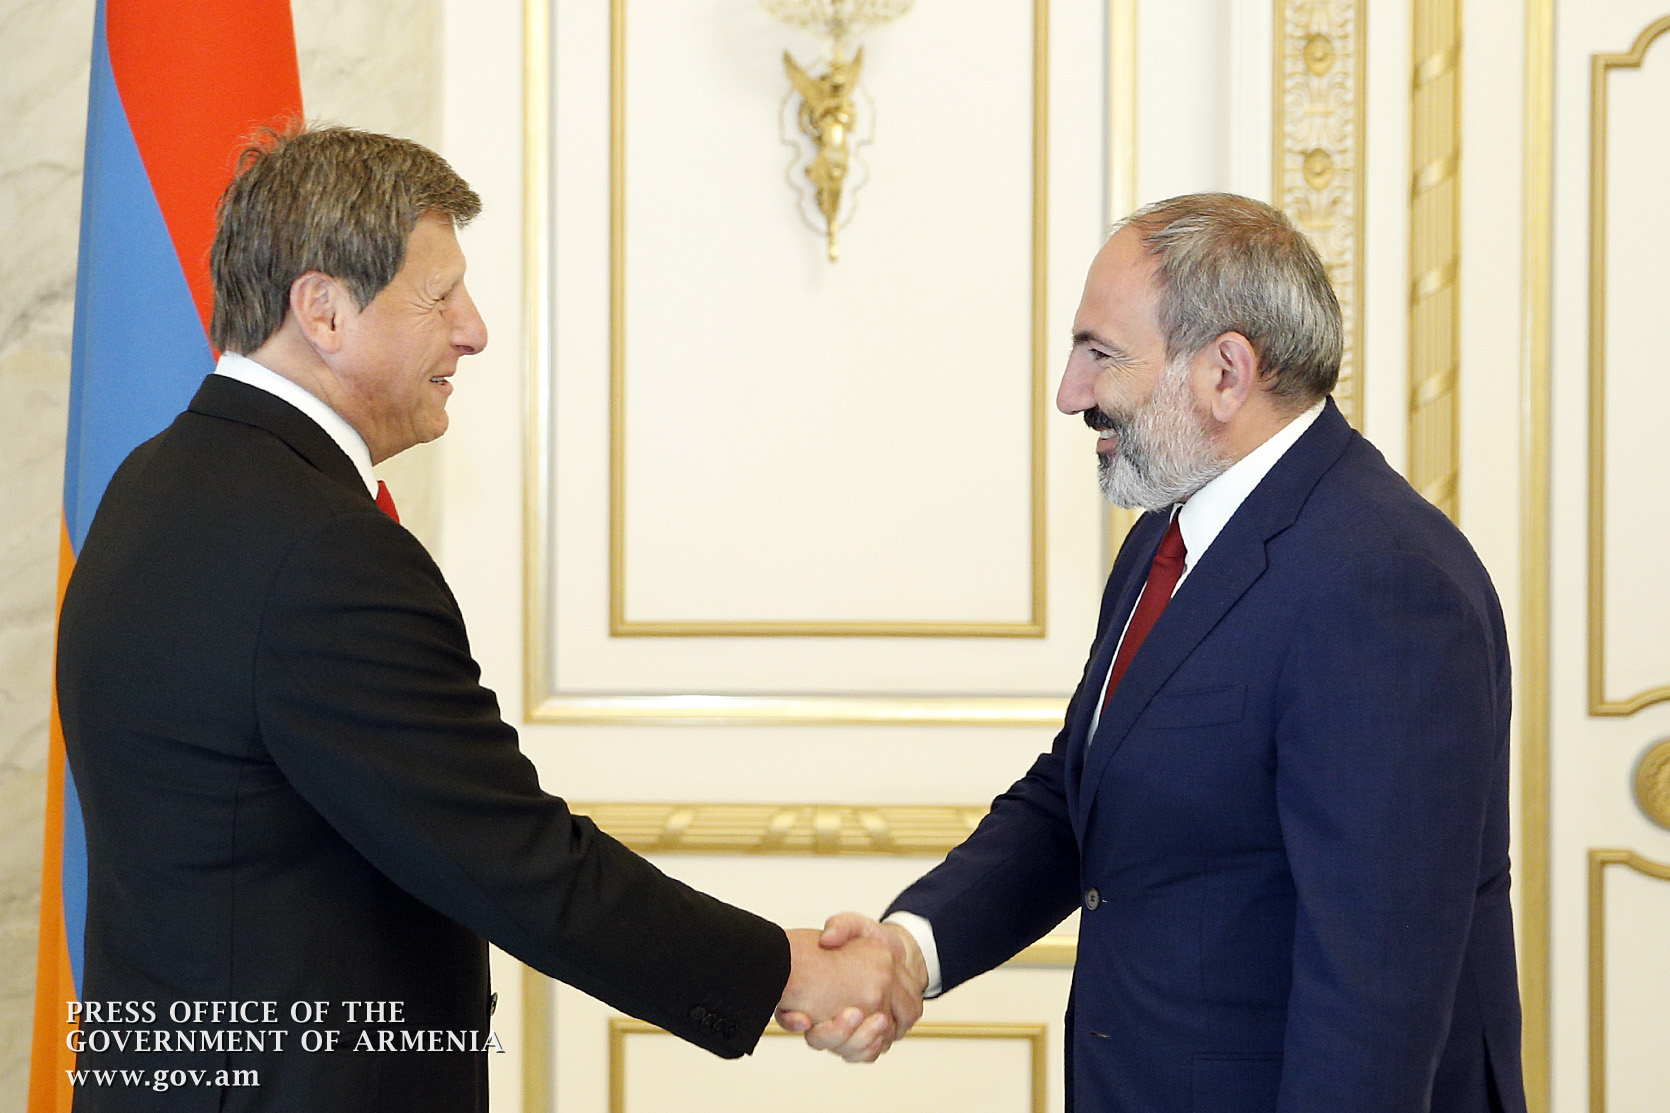 Мэр Глендейла на встрече с Николом Пашиняном: Армяне Диаспоры доверяют правительству Армении 